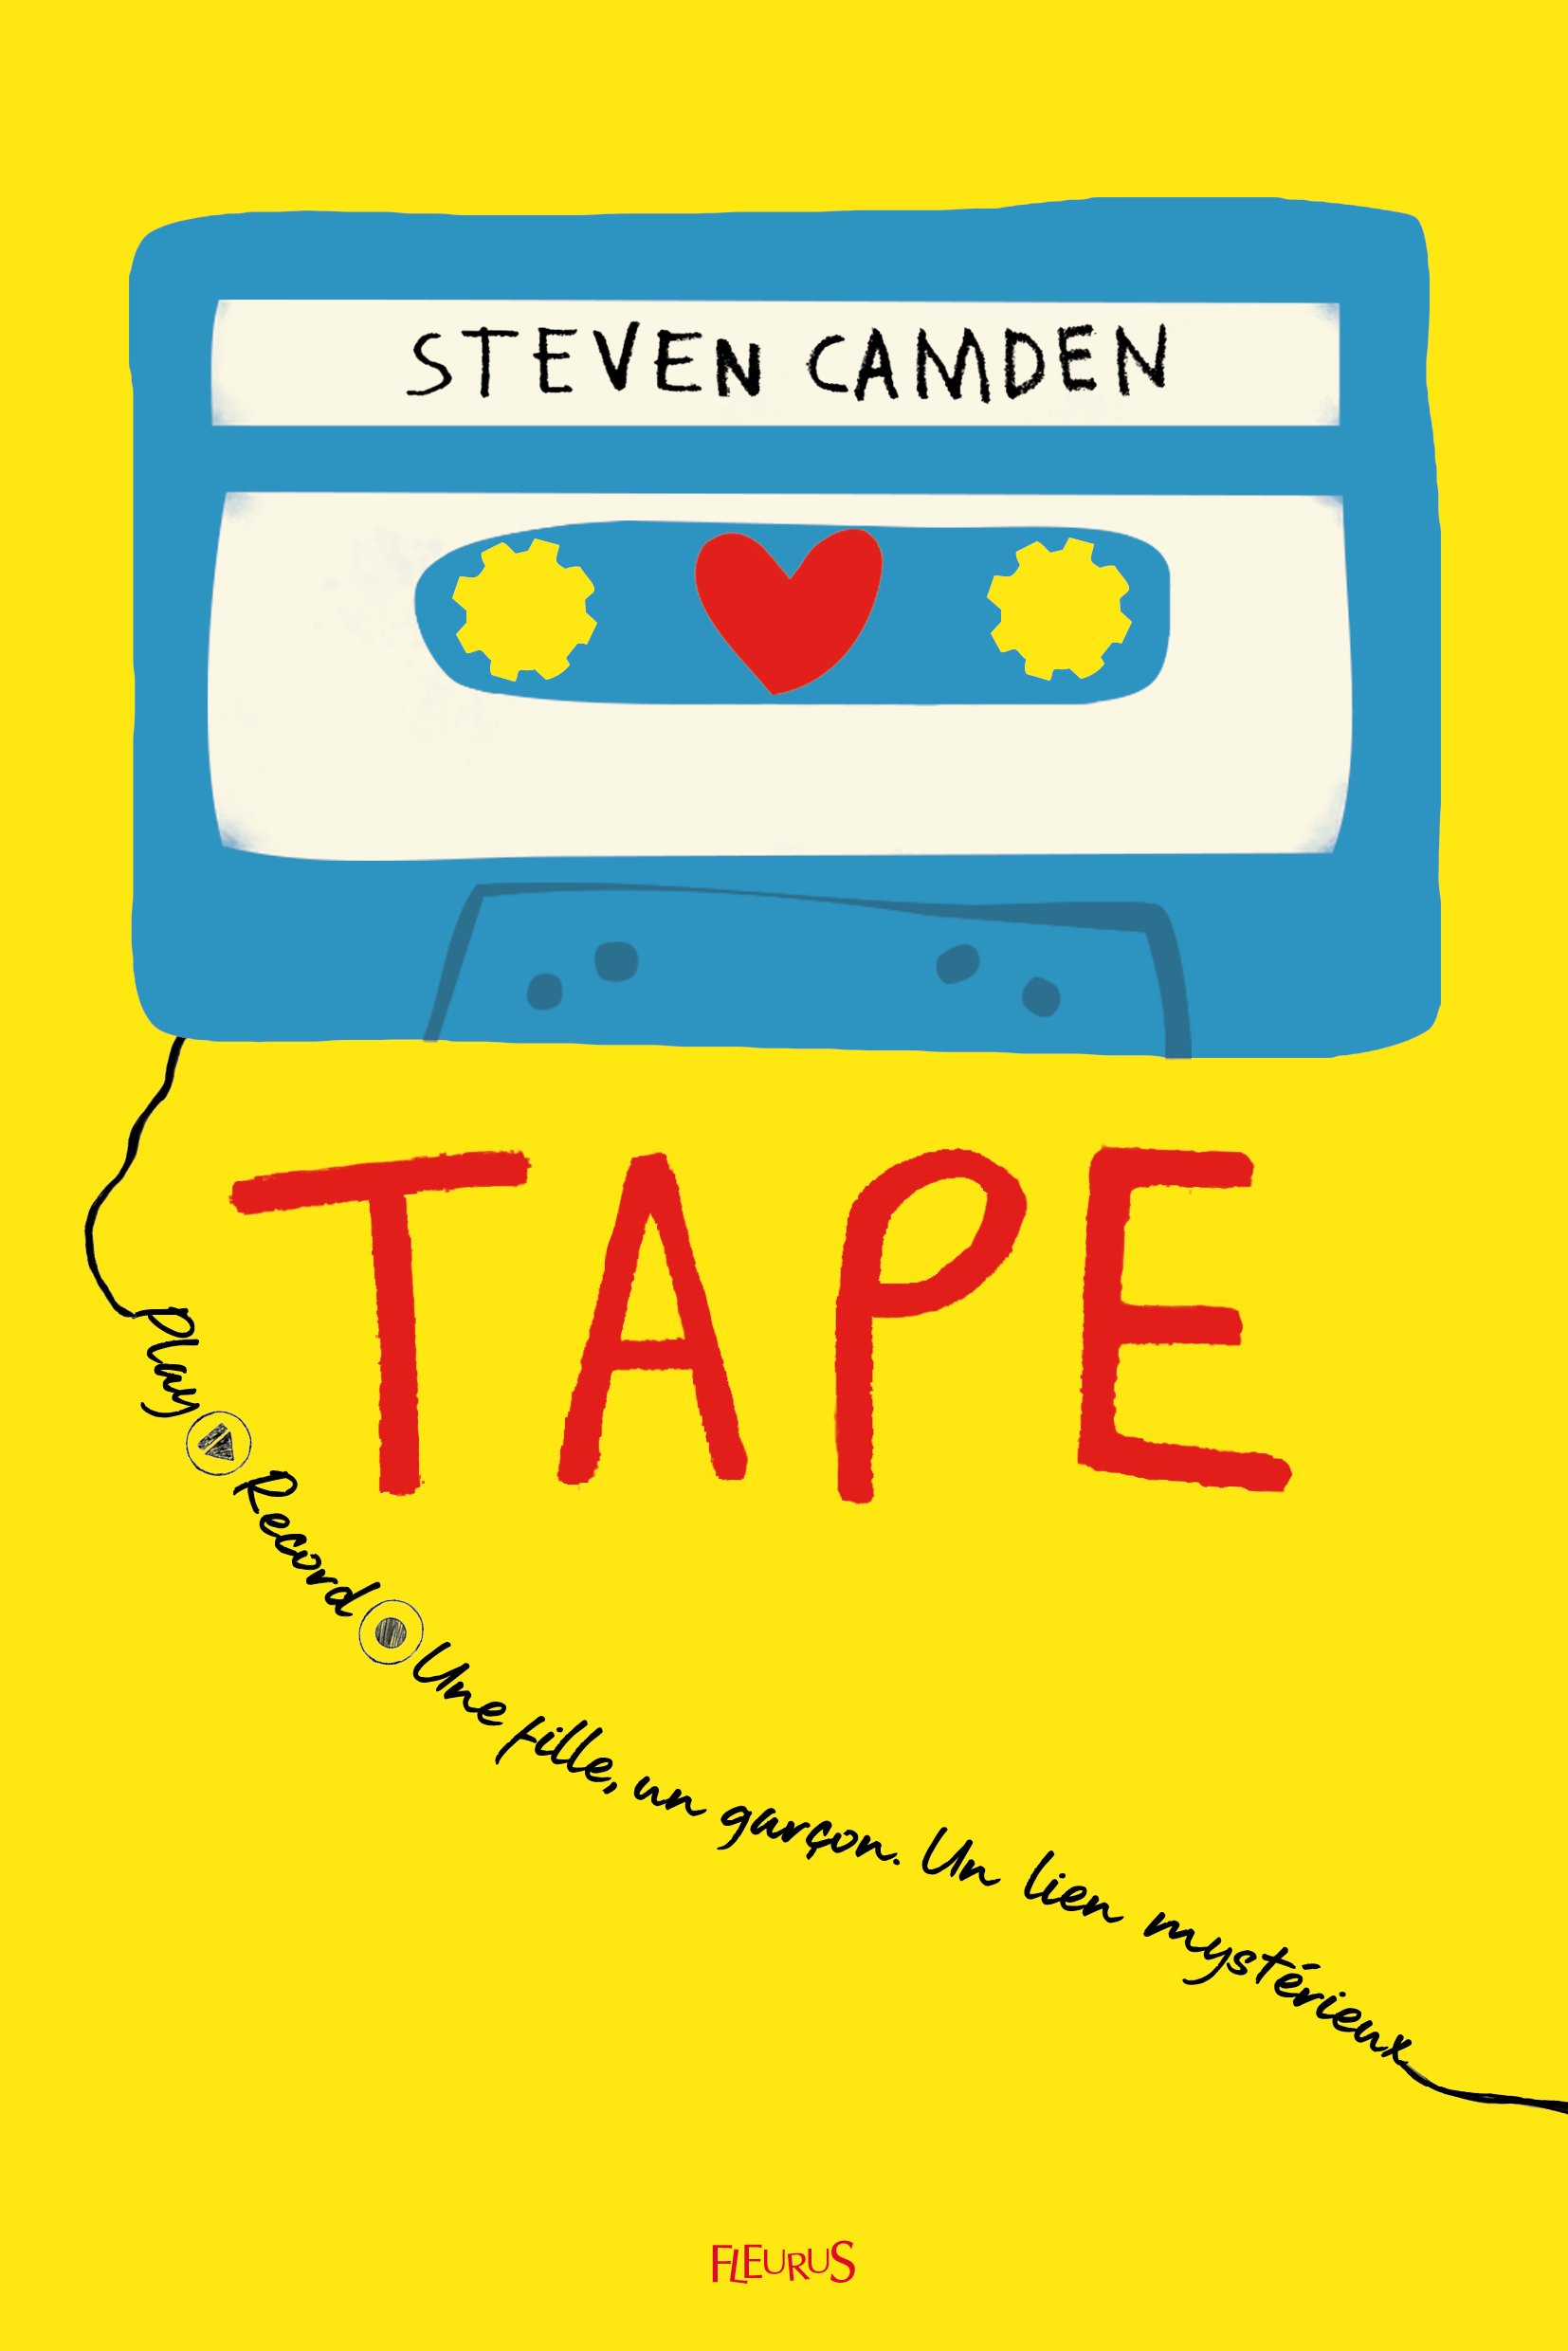 Tape by Steven Camden